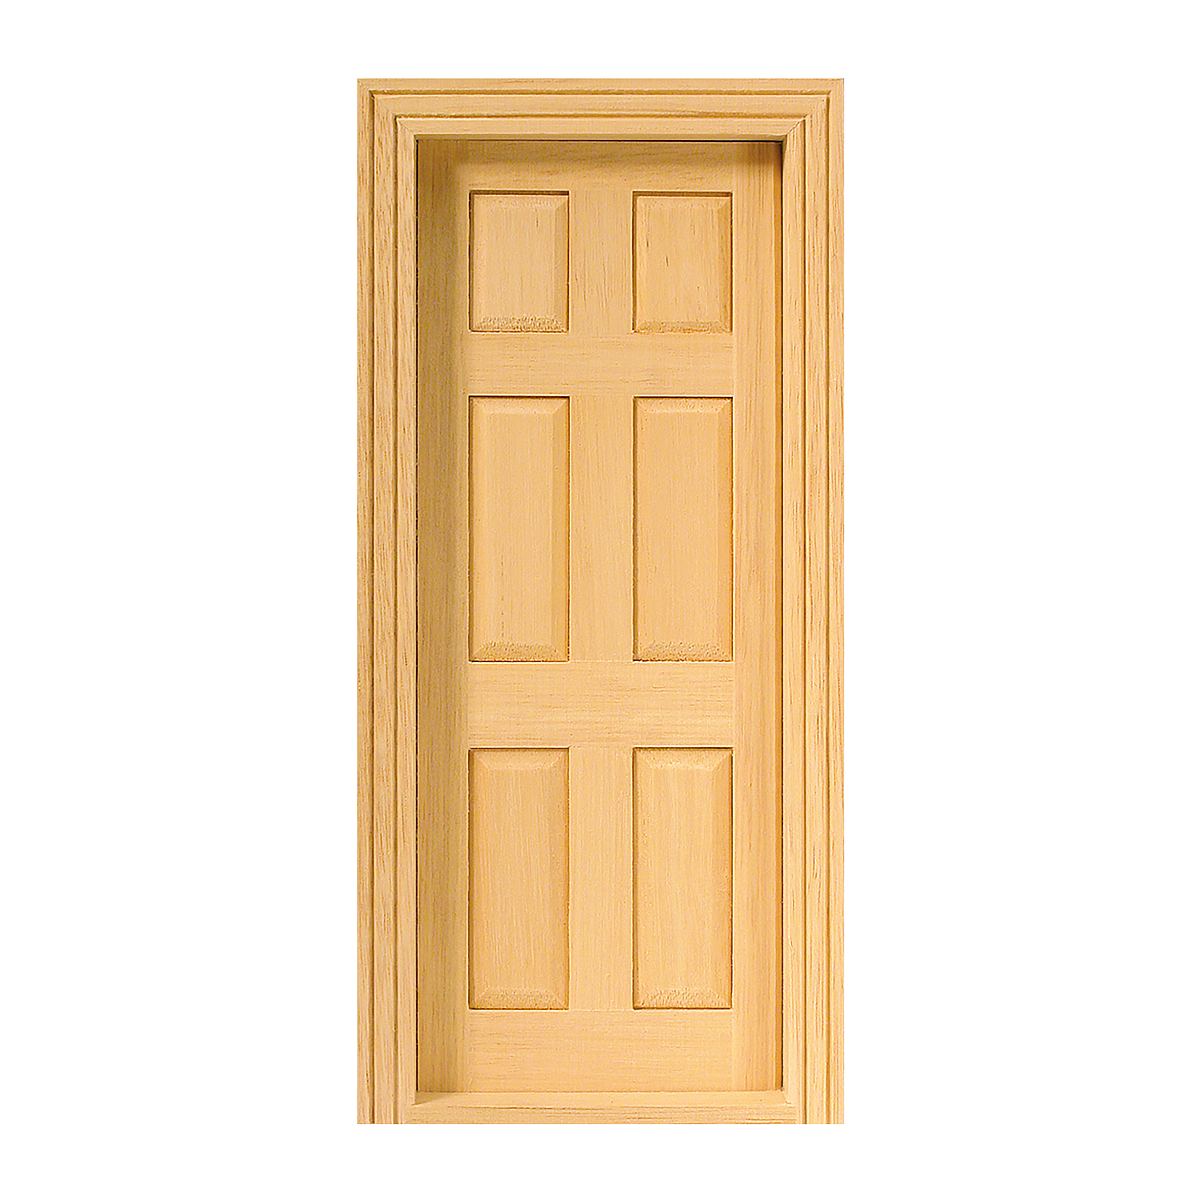 Panel door, natural wood